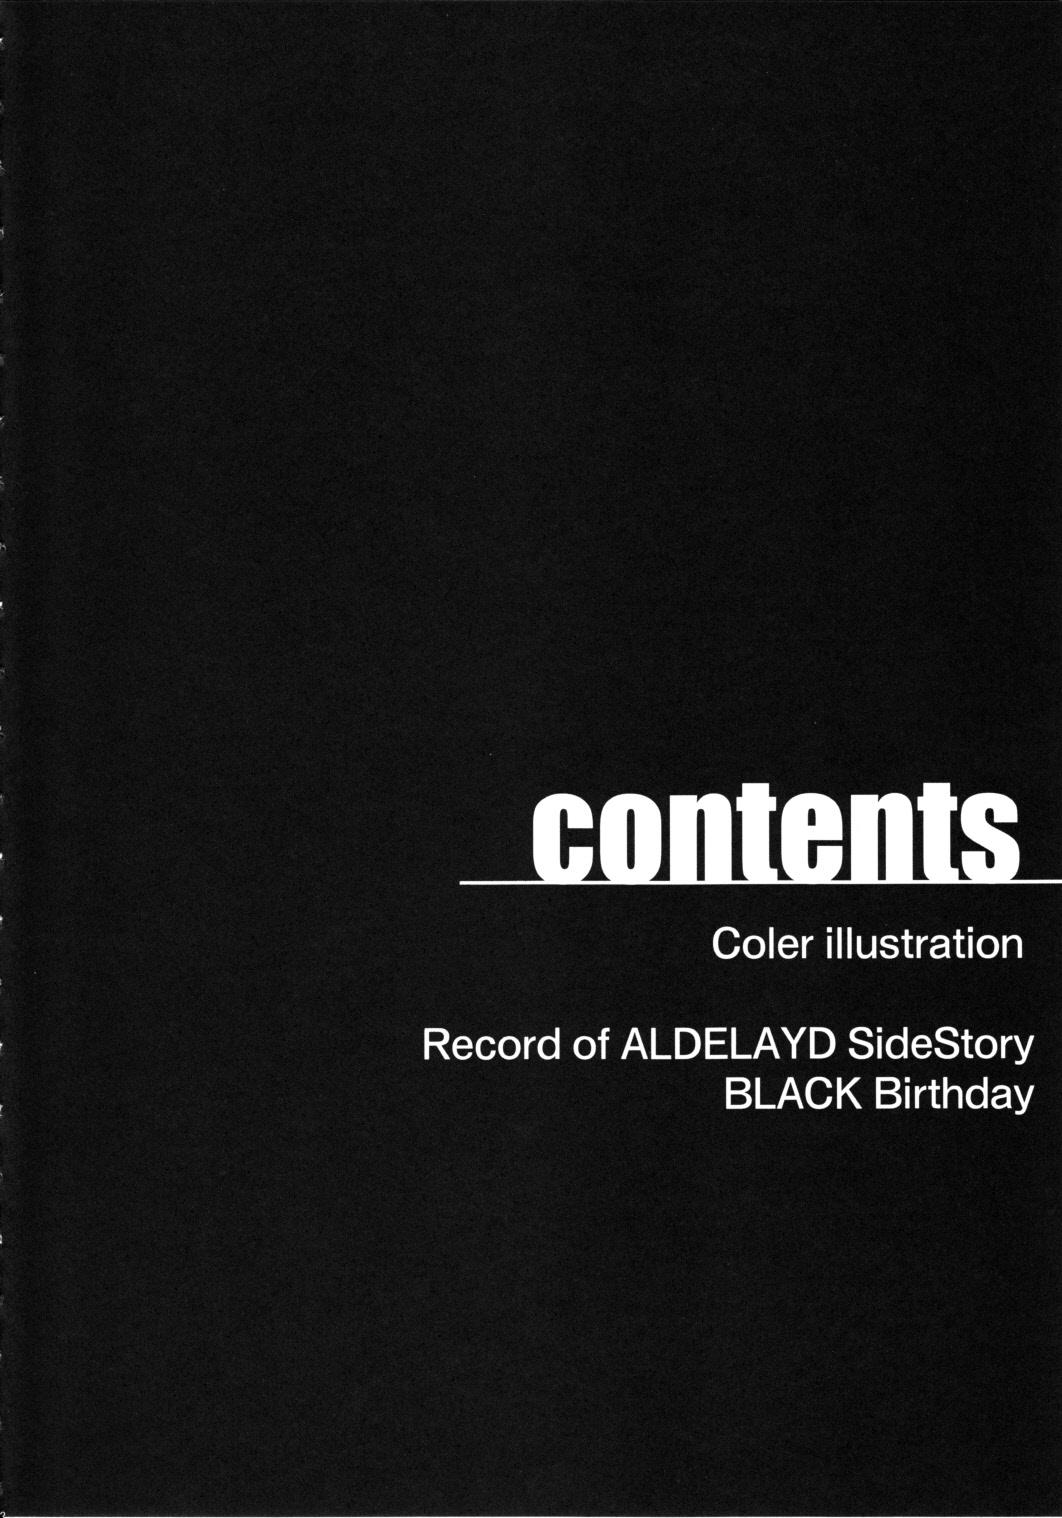 Record of ALDELAYD SideStory Black Birthday 6